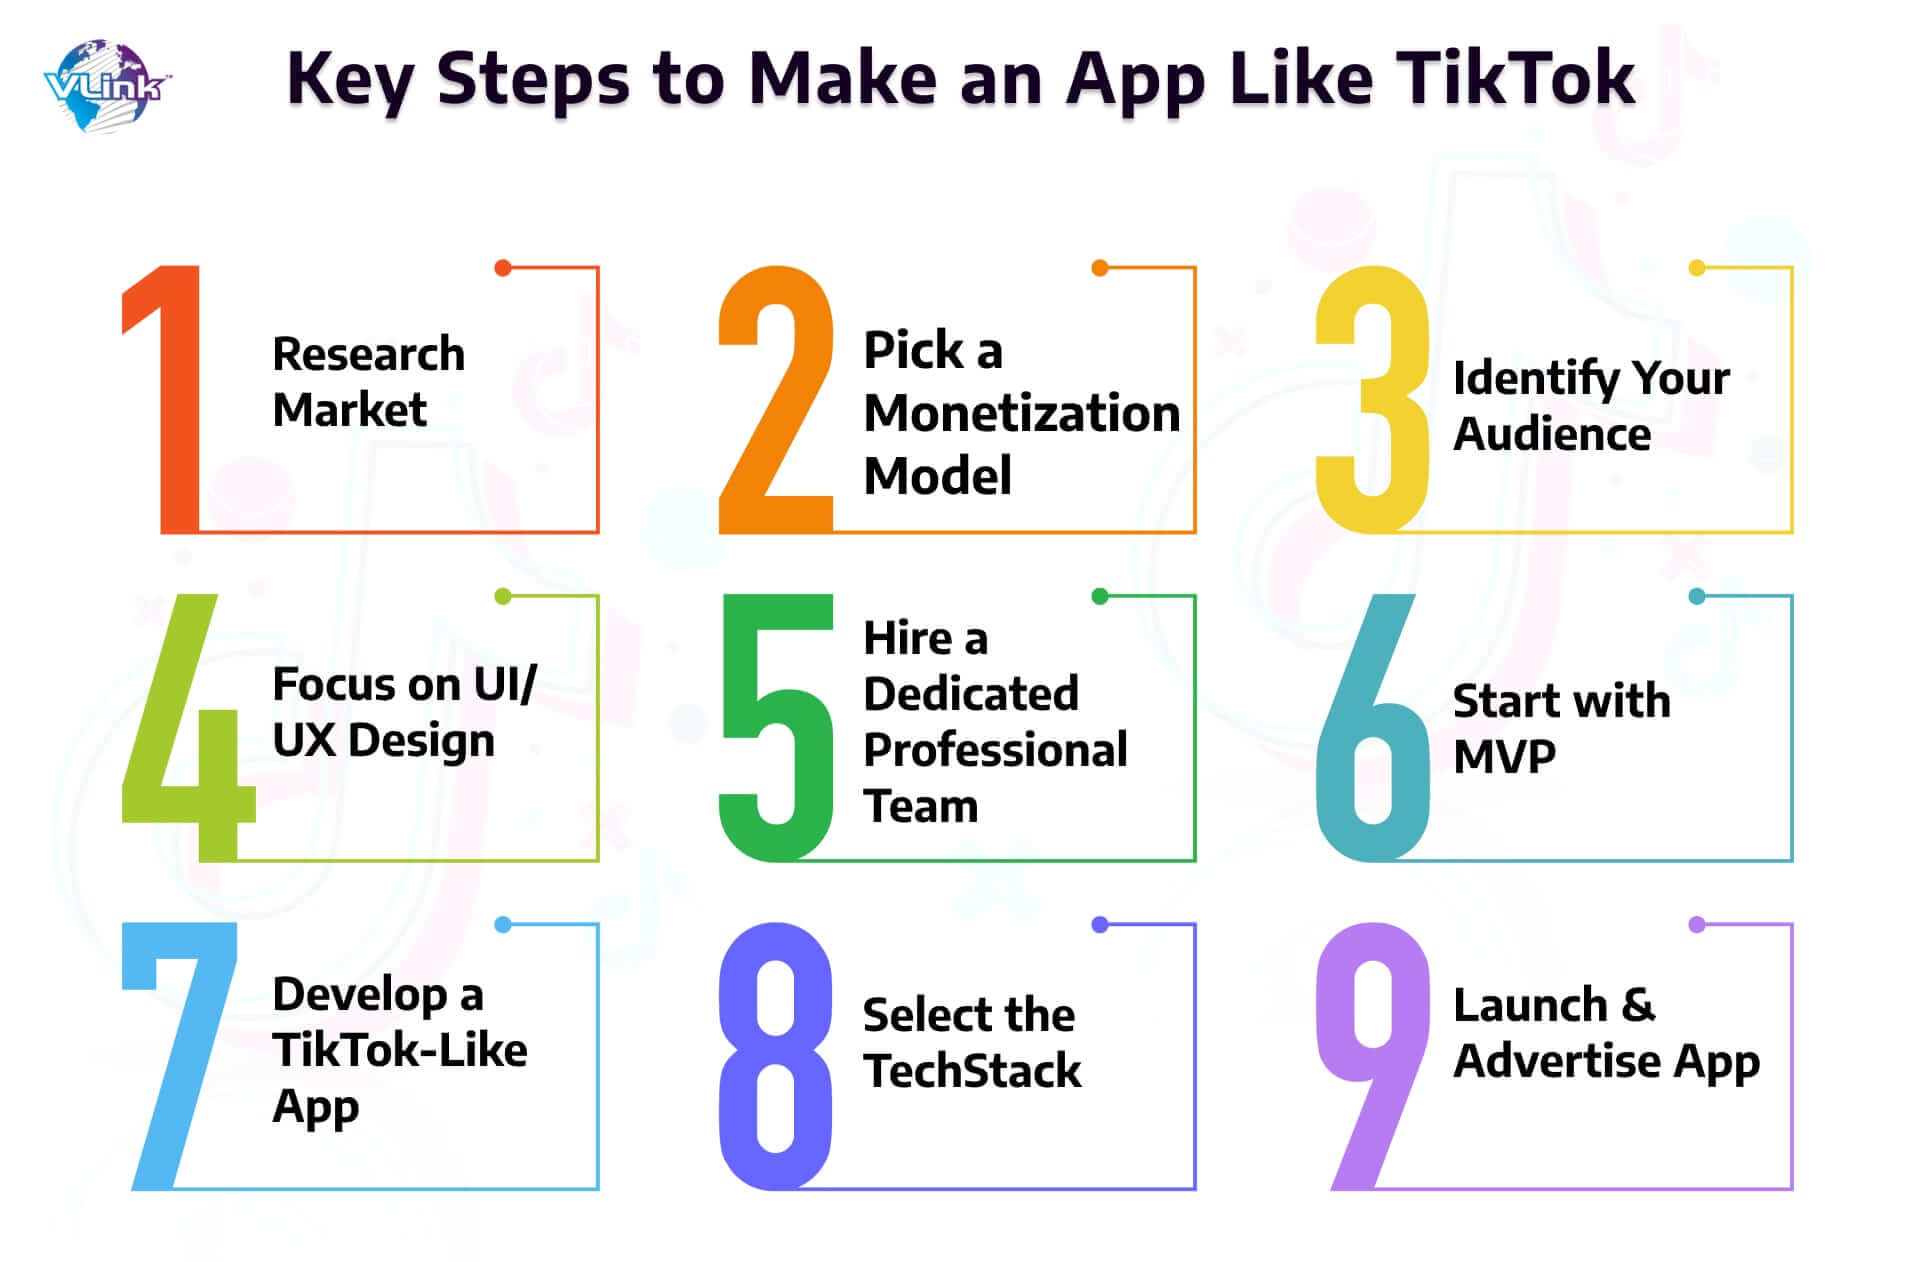 Key Steps to Make an App Like TikTok